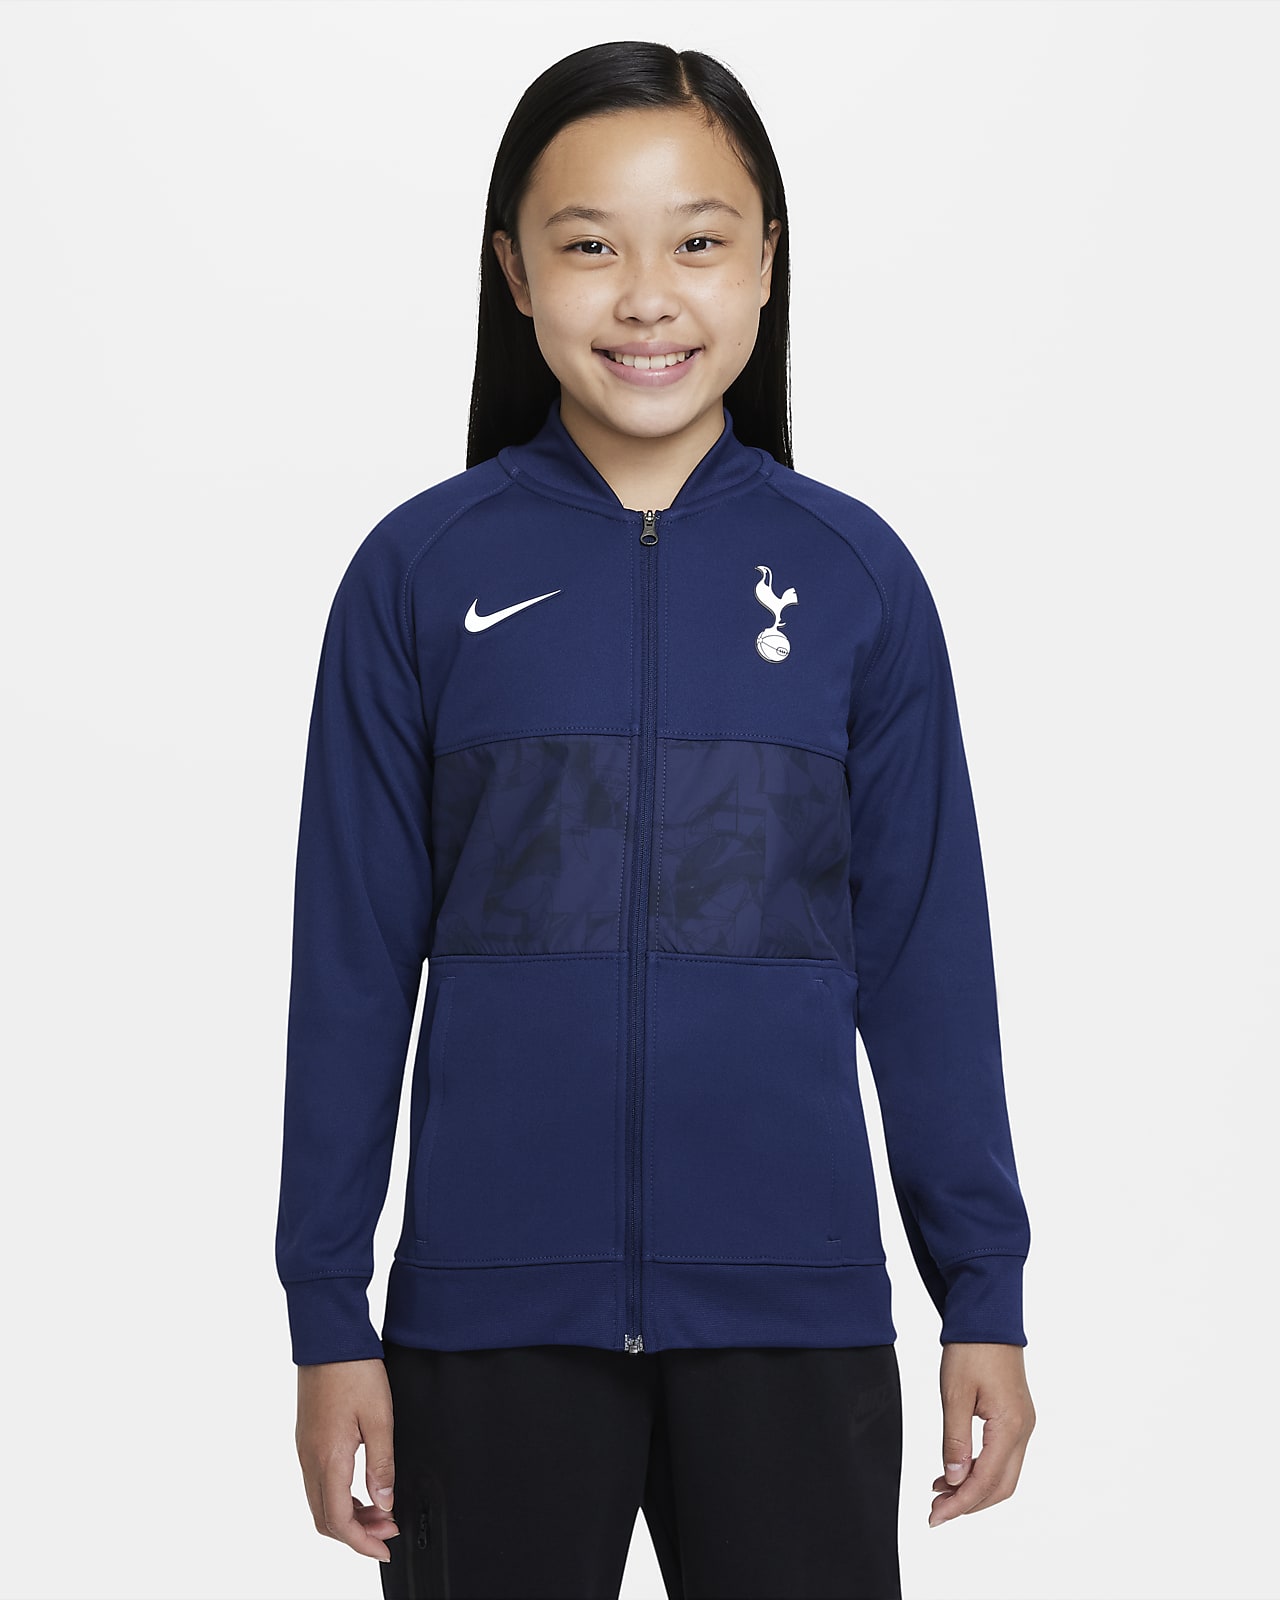 Tottenham Hotspur Older Kids' Full-Zip Football Jacket